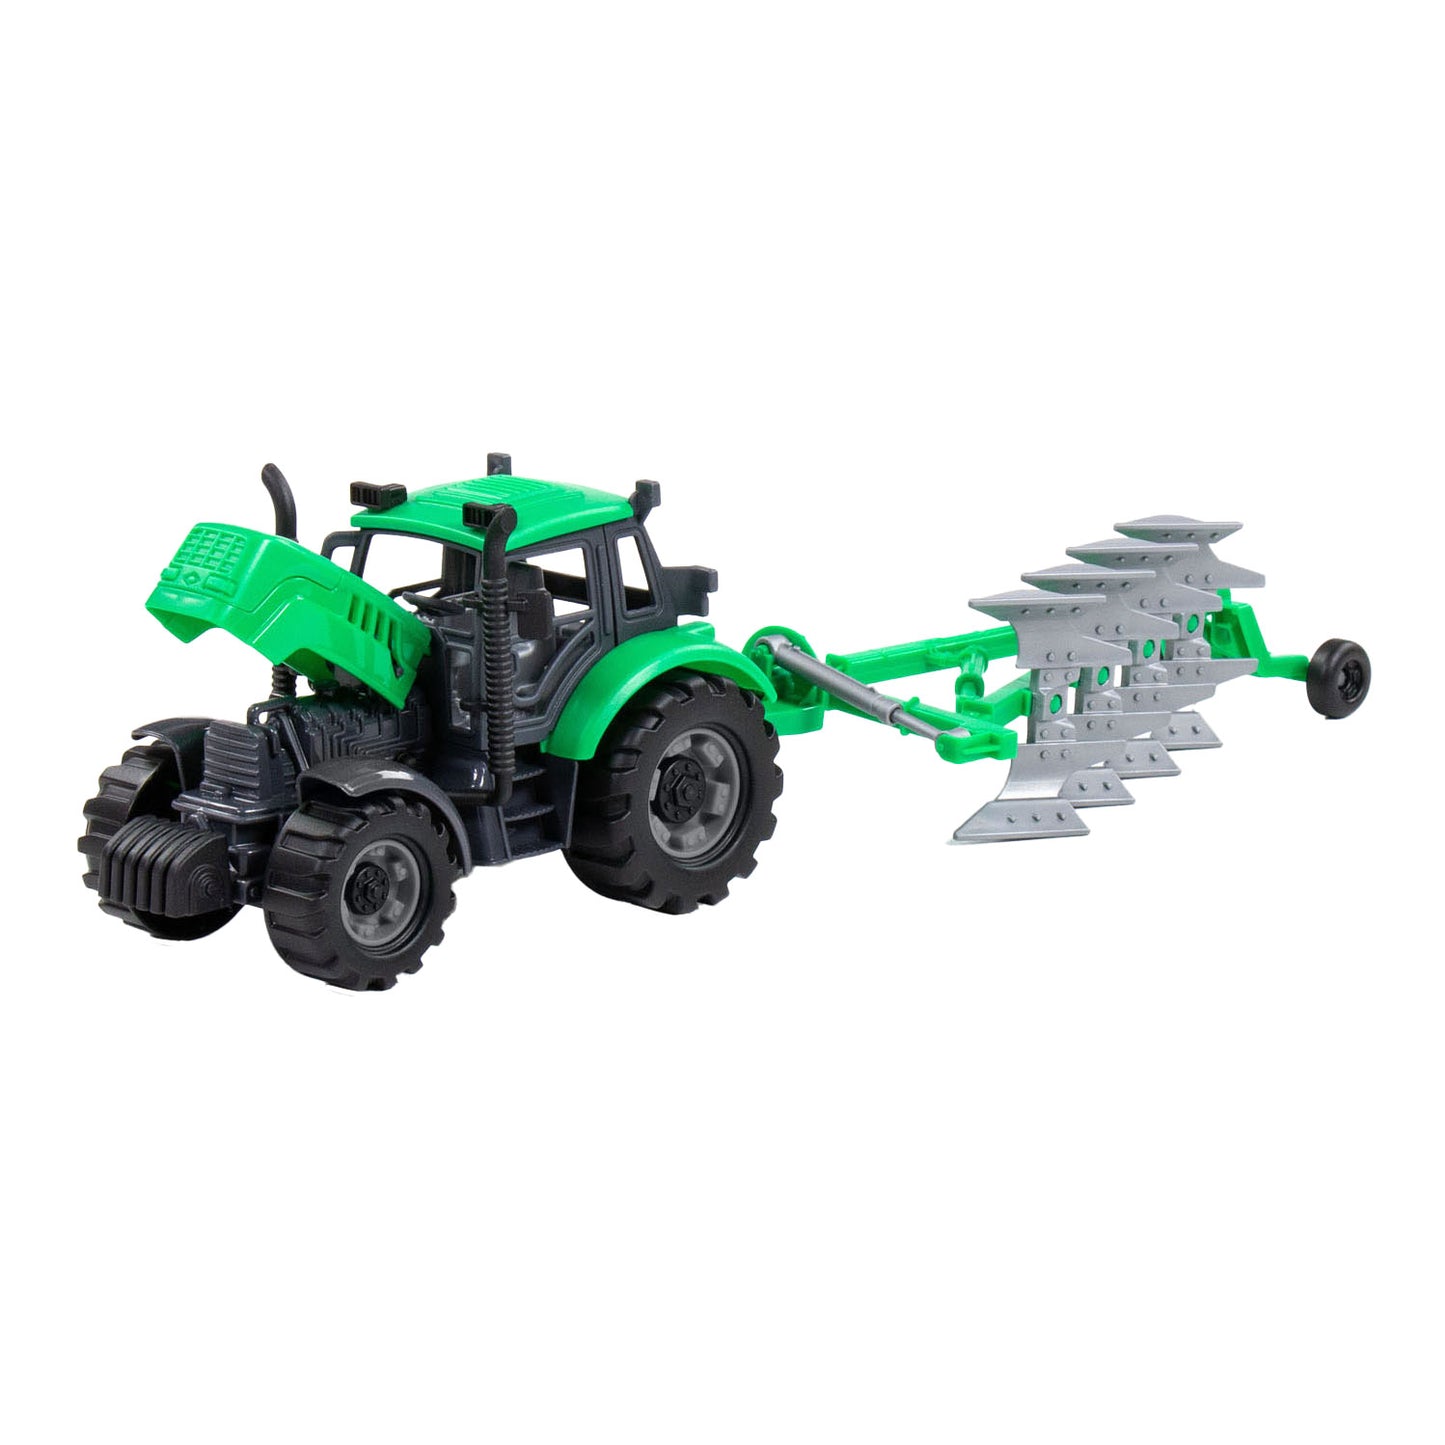 Cavallino Toys Cavallino Tractor met Ploeg Groen, Schaal 1:32